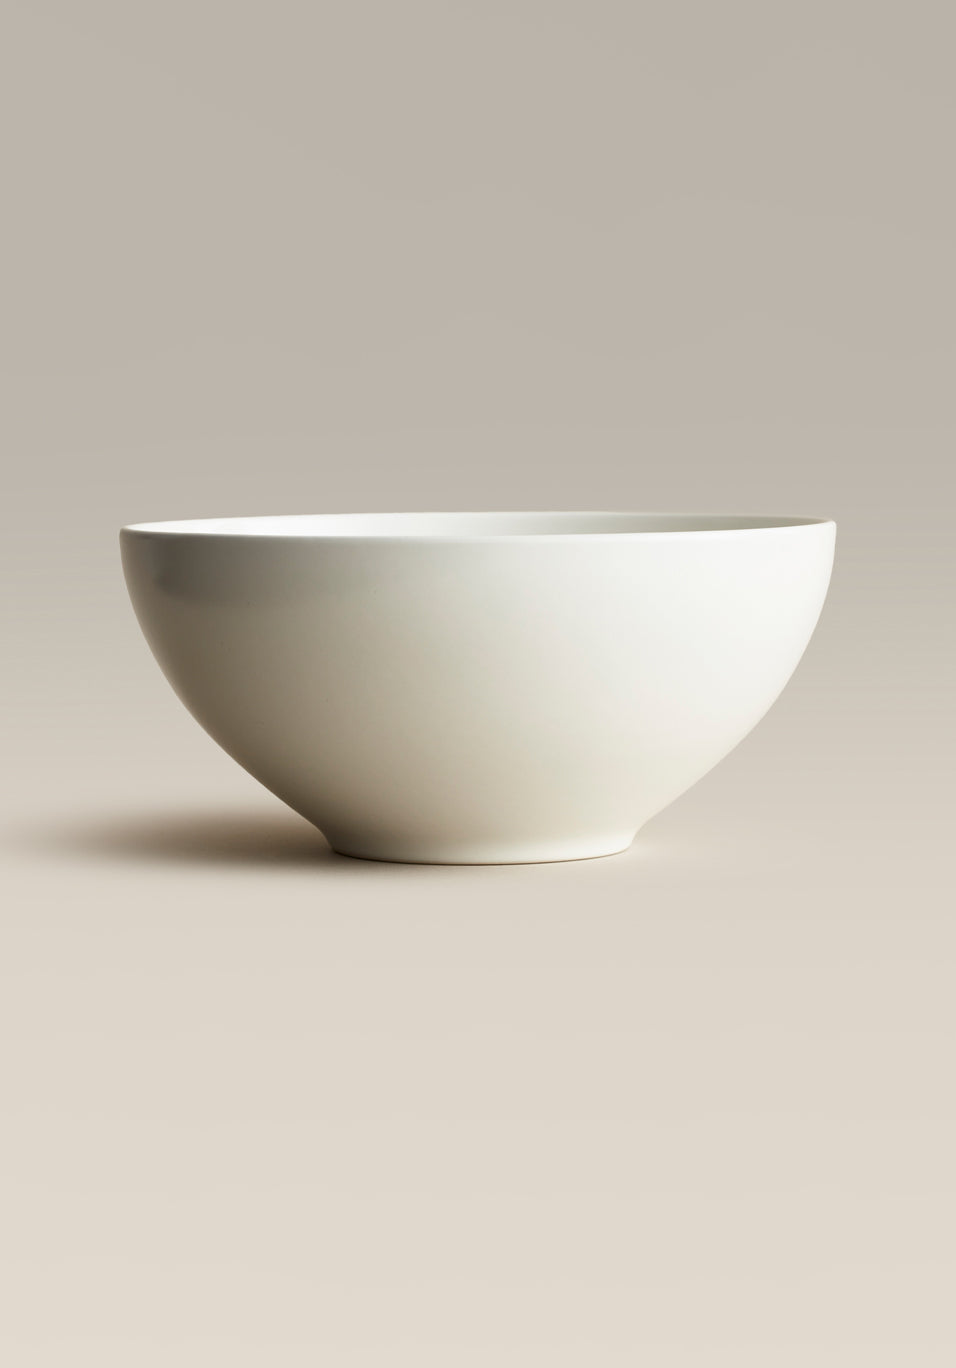 Ceramic Serving Bowls, Large Serving Bowls